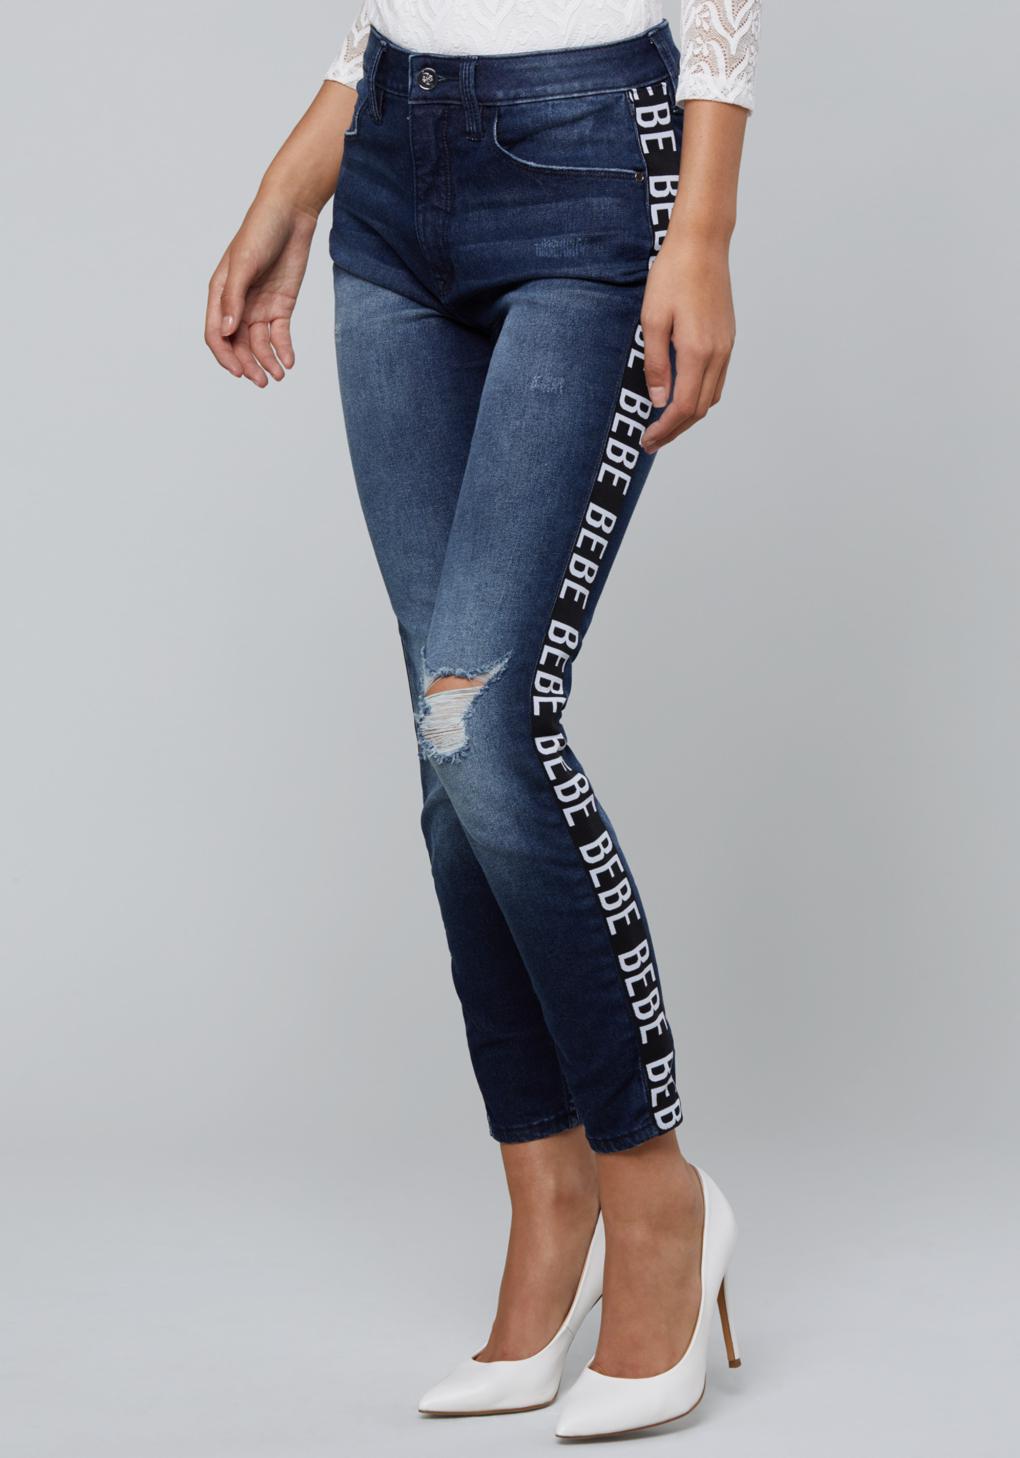 Bebe Denim Logo Stripe Crop Jeans in Blue - Lyst